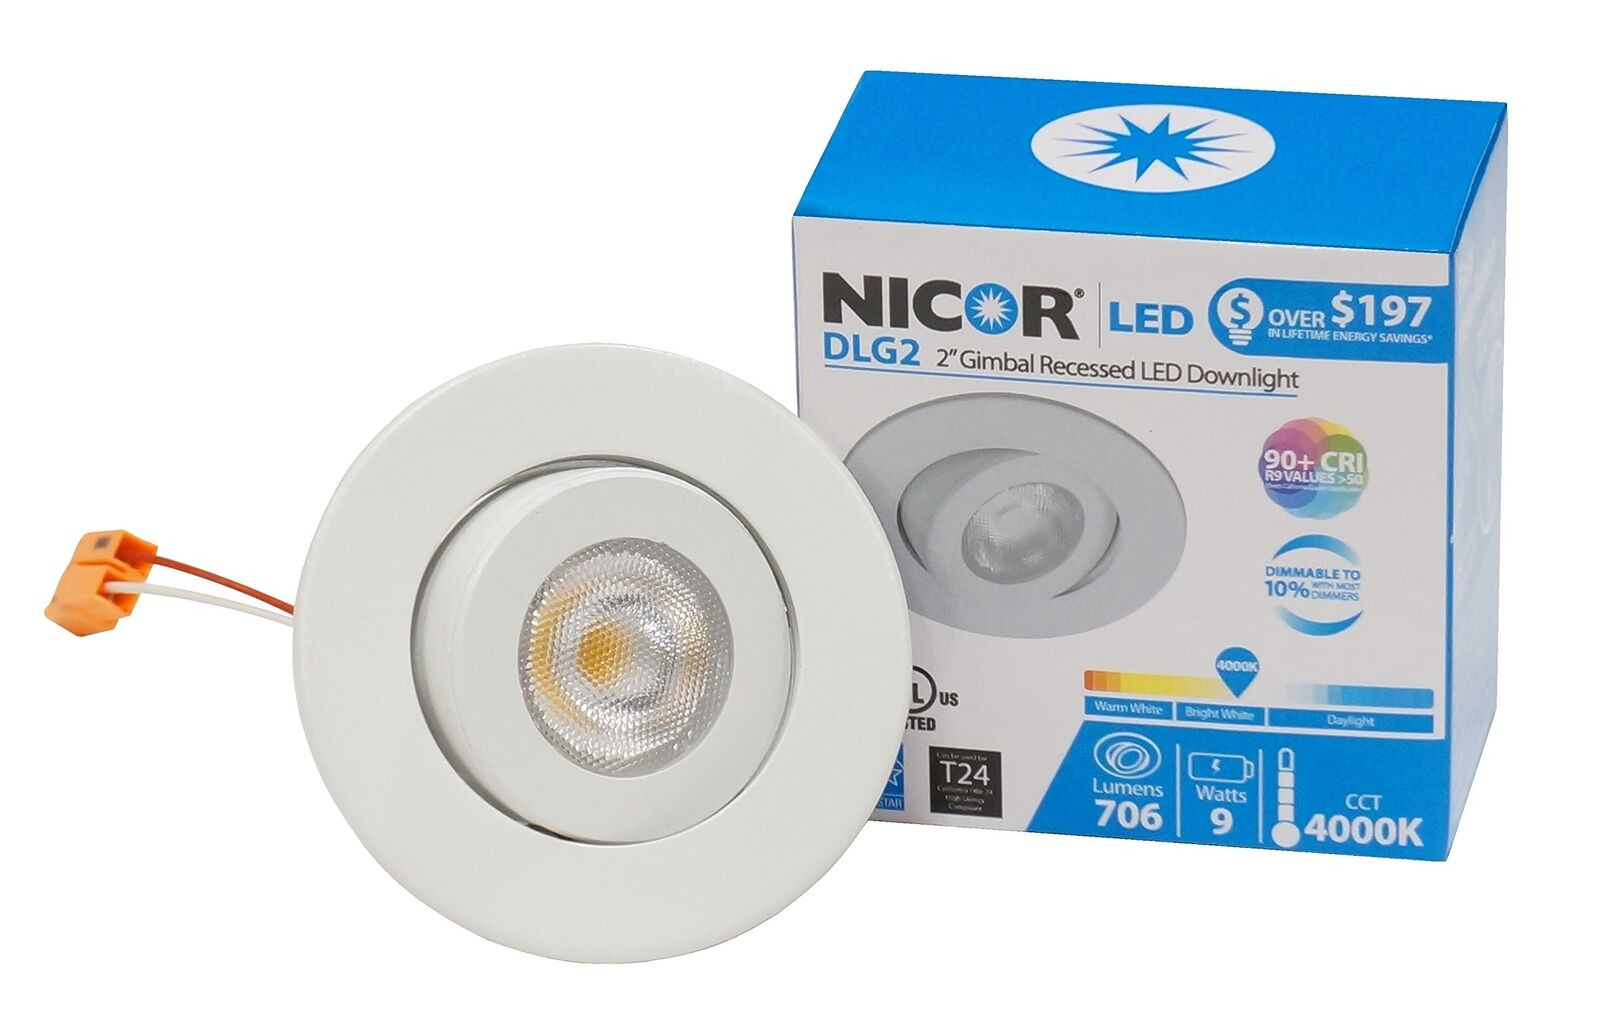 NICOR Lighting 2 Inch LED Gimbal Downlight in White, 4000K (DLG2-10-120-4